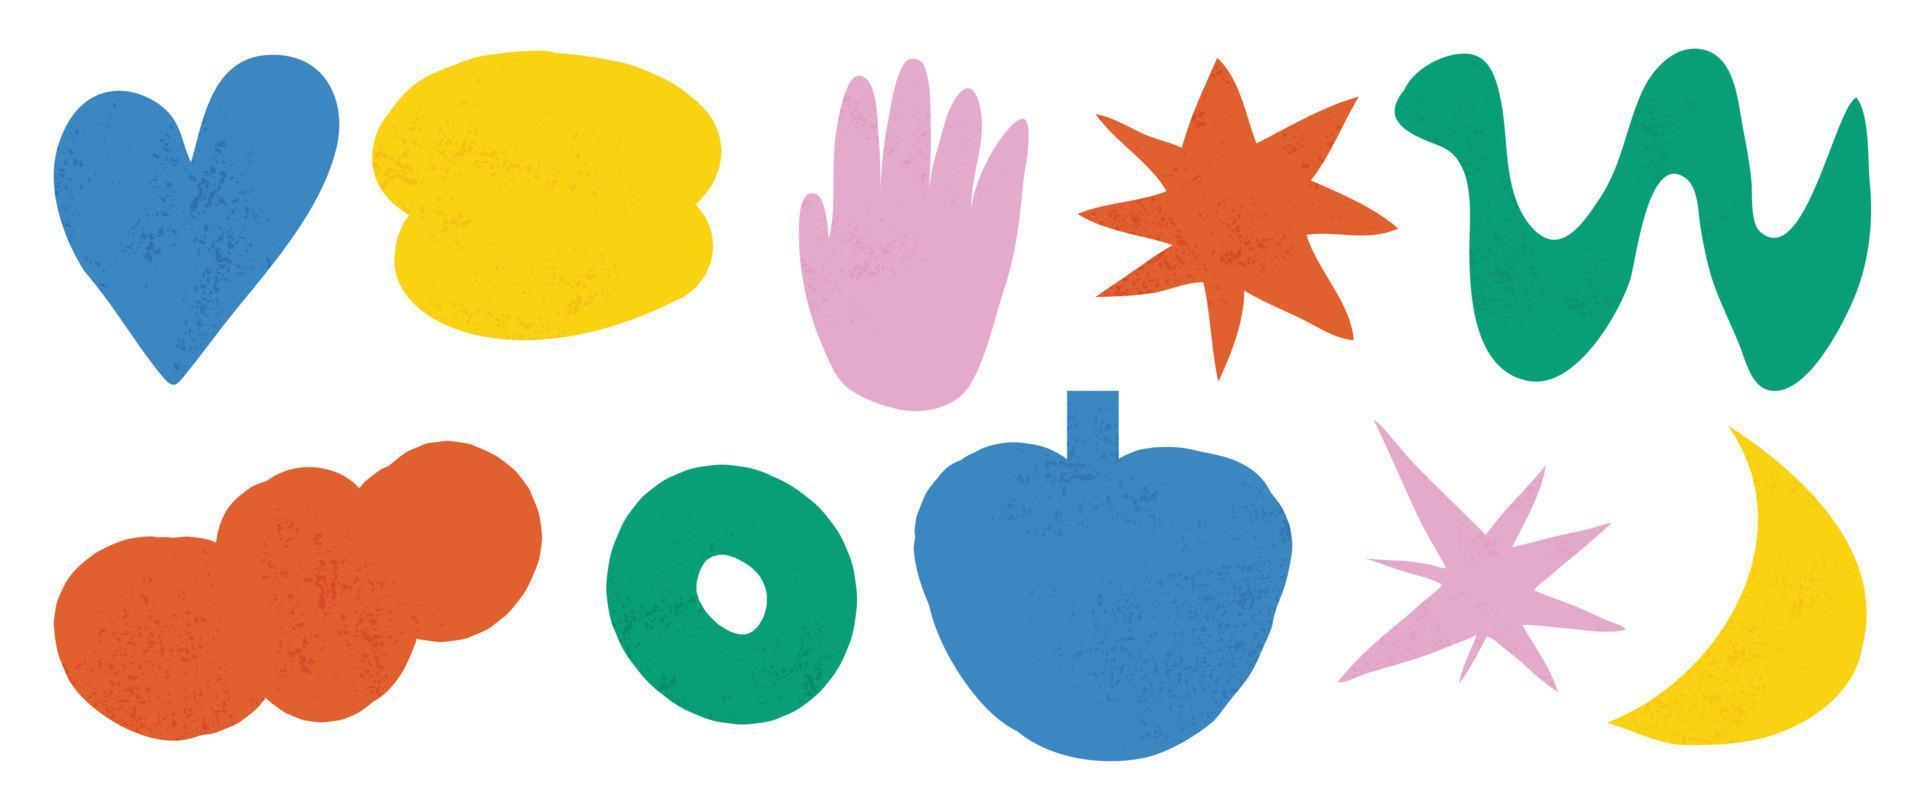 abstract retro vormen vector set. ster, maan, slang, wolk, hart, hand, donut in modieus retro jaren 70 tekenfilm stijl. groovy hedendaags esthetisch vector element voor logo, decoratie, sticker.